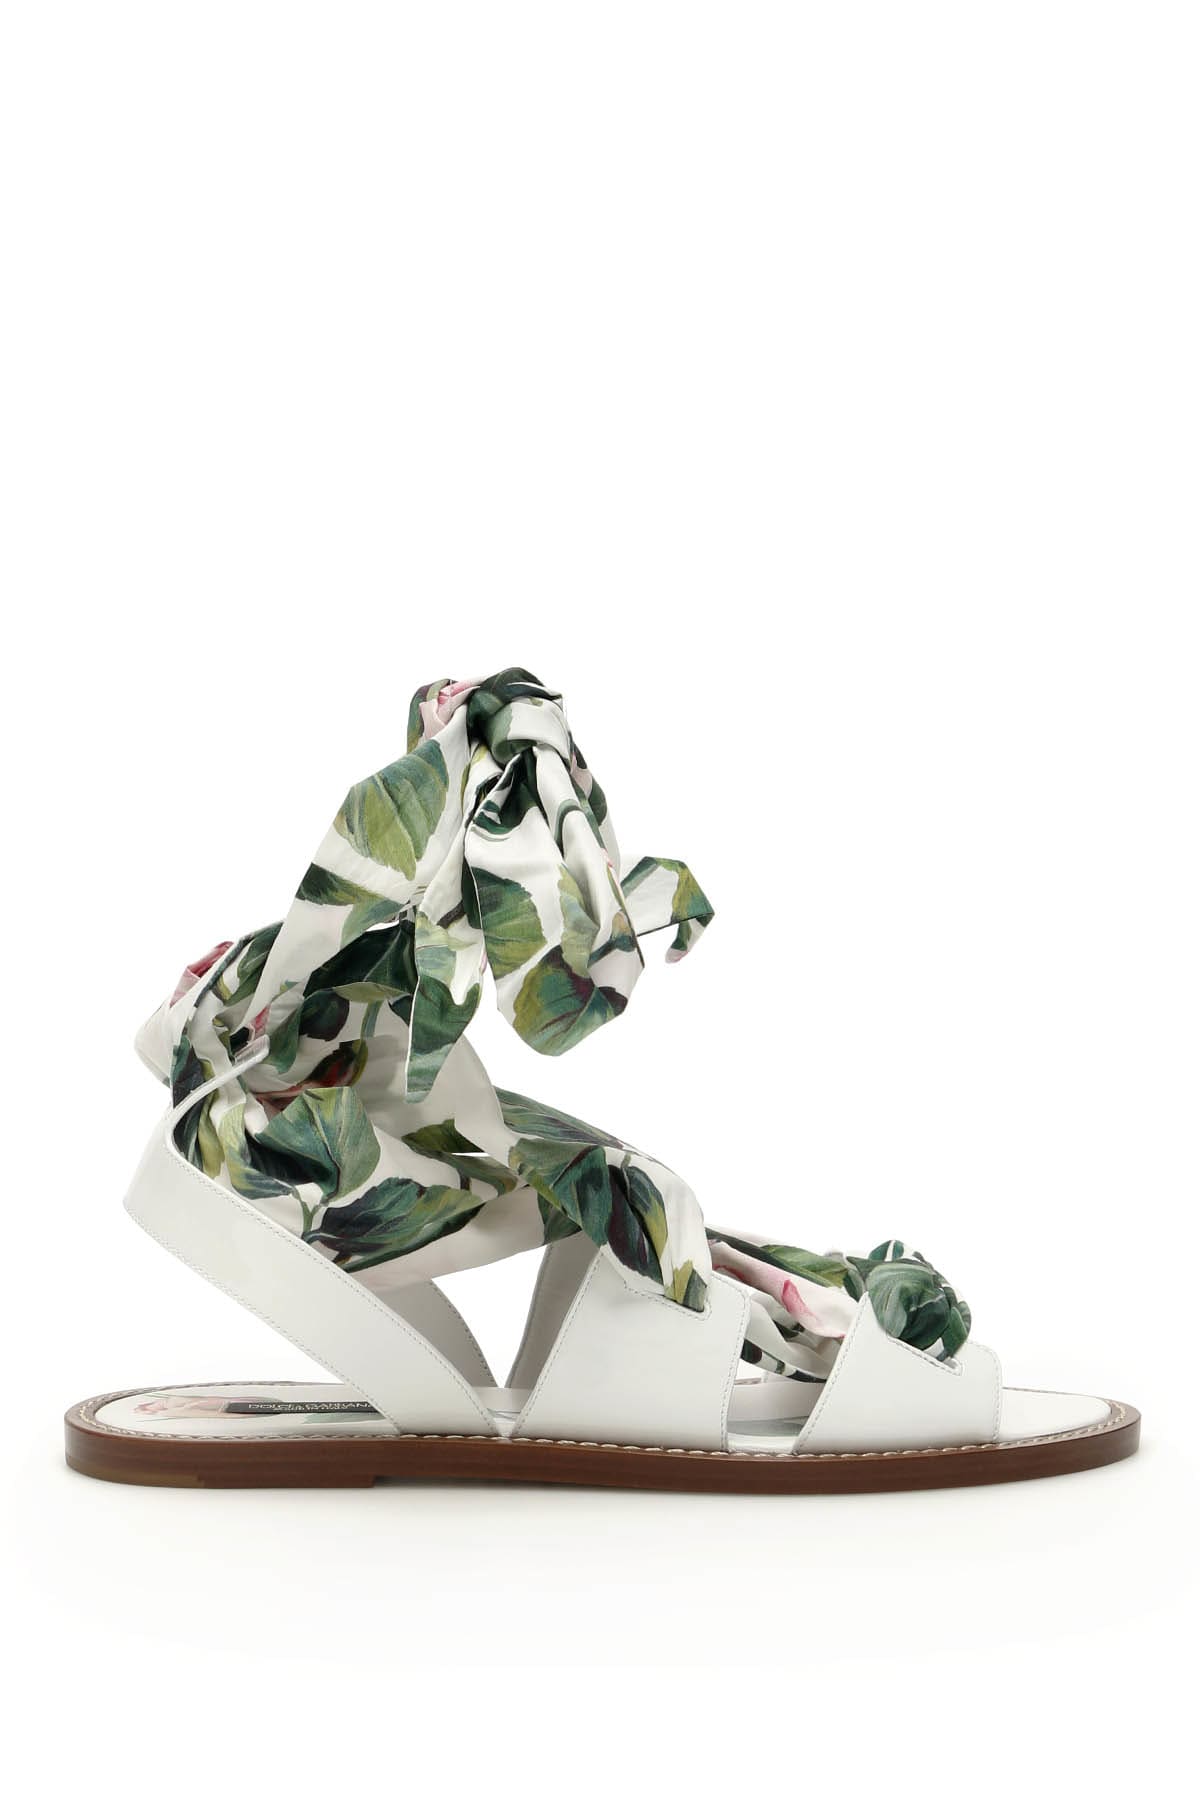 Dolce & Gabbana Rose Portofino Flat Sandals